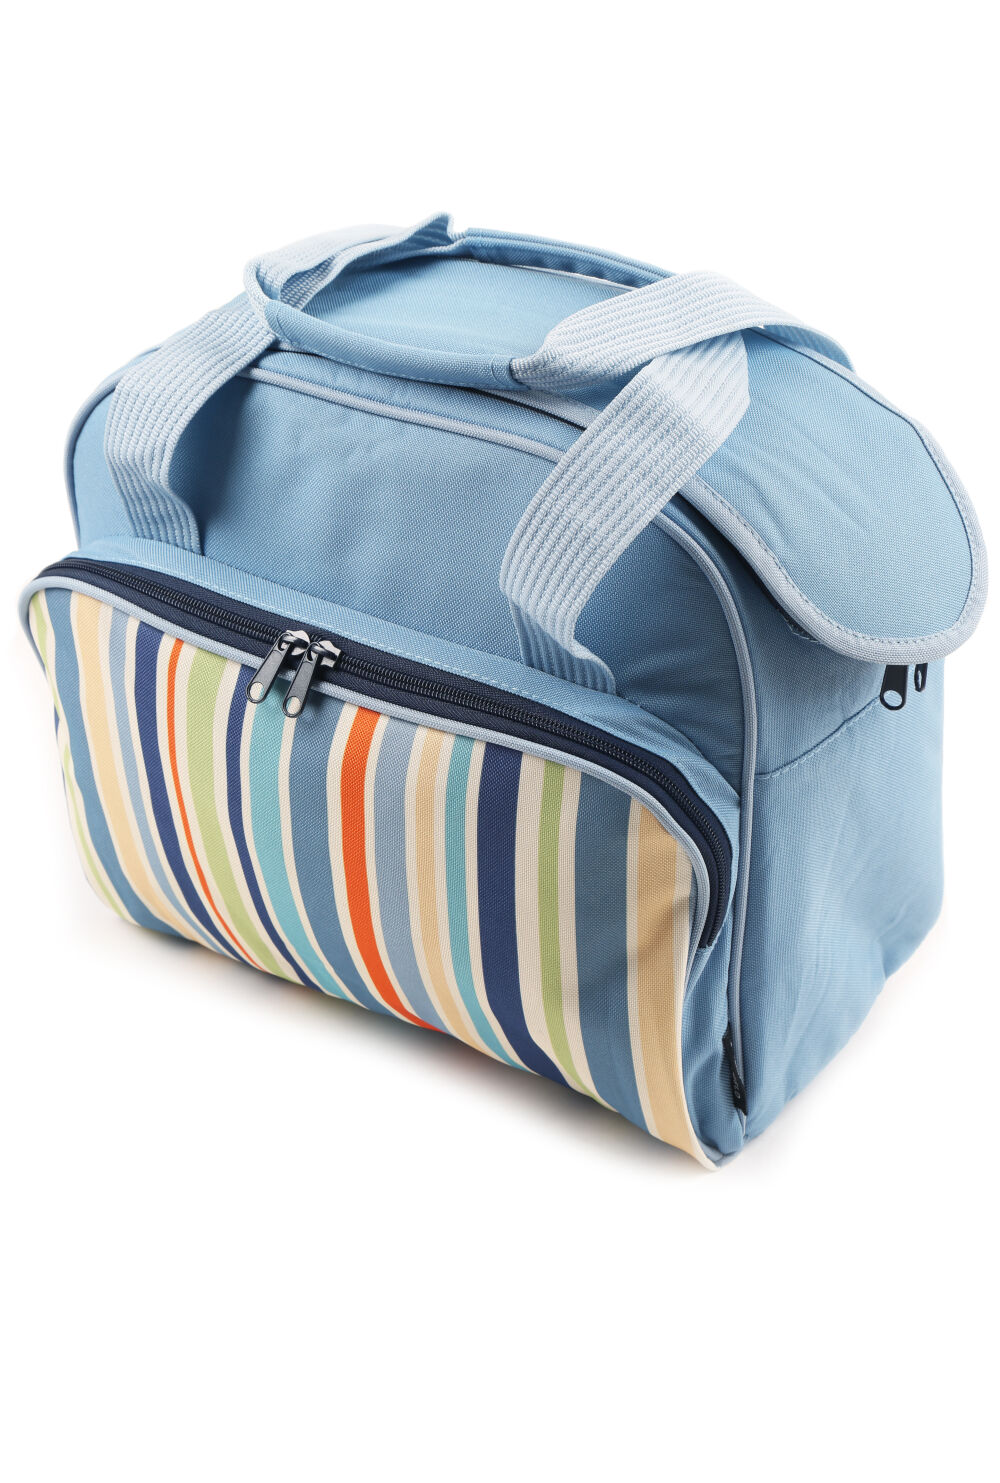 sky blue travel bag